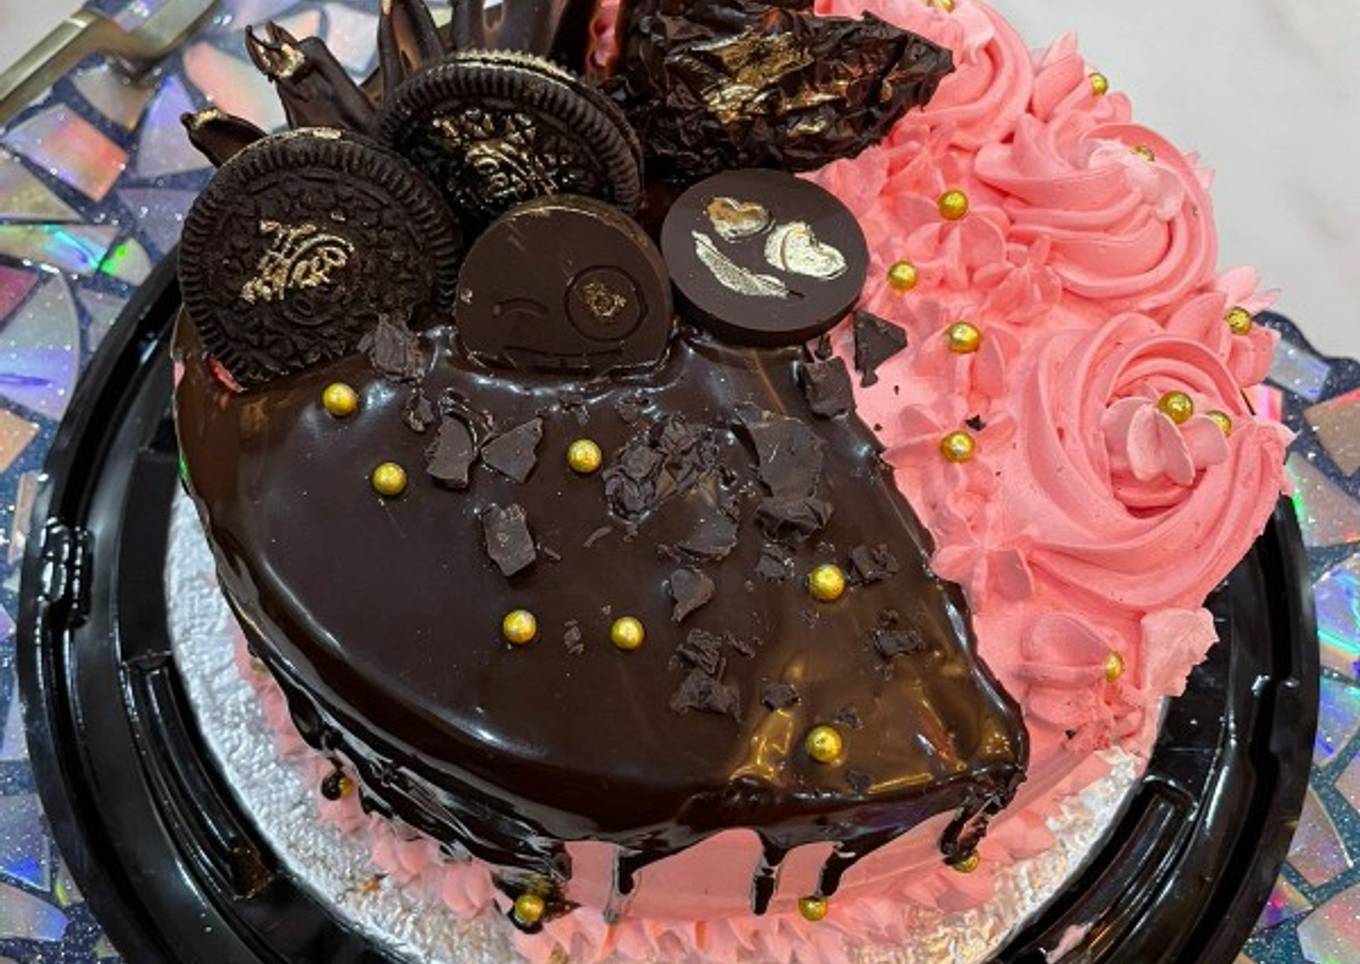 Chocolate fusion cake ðŸŽ‚ðŸŽ‚